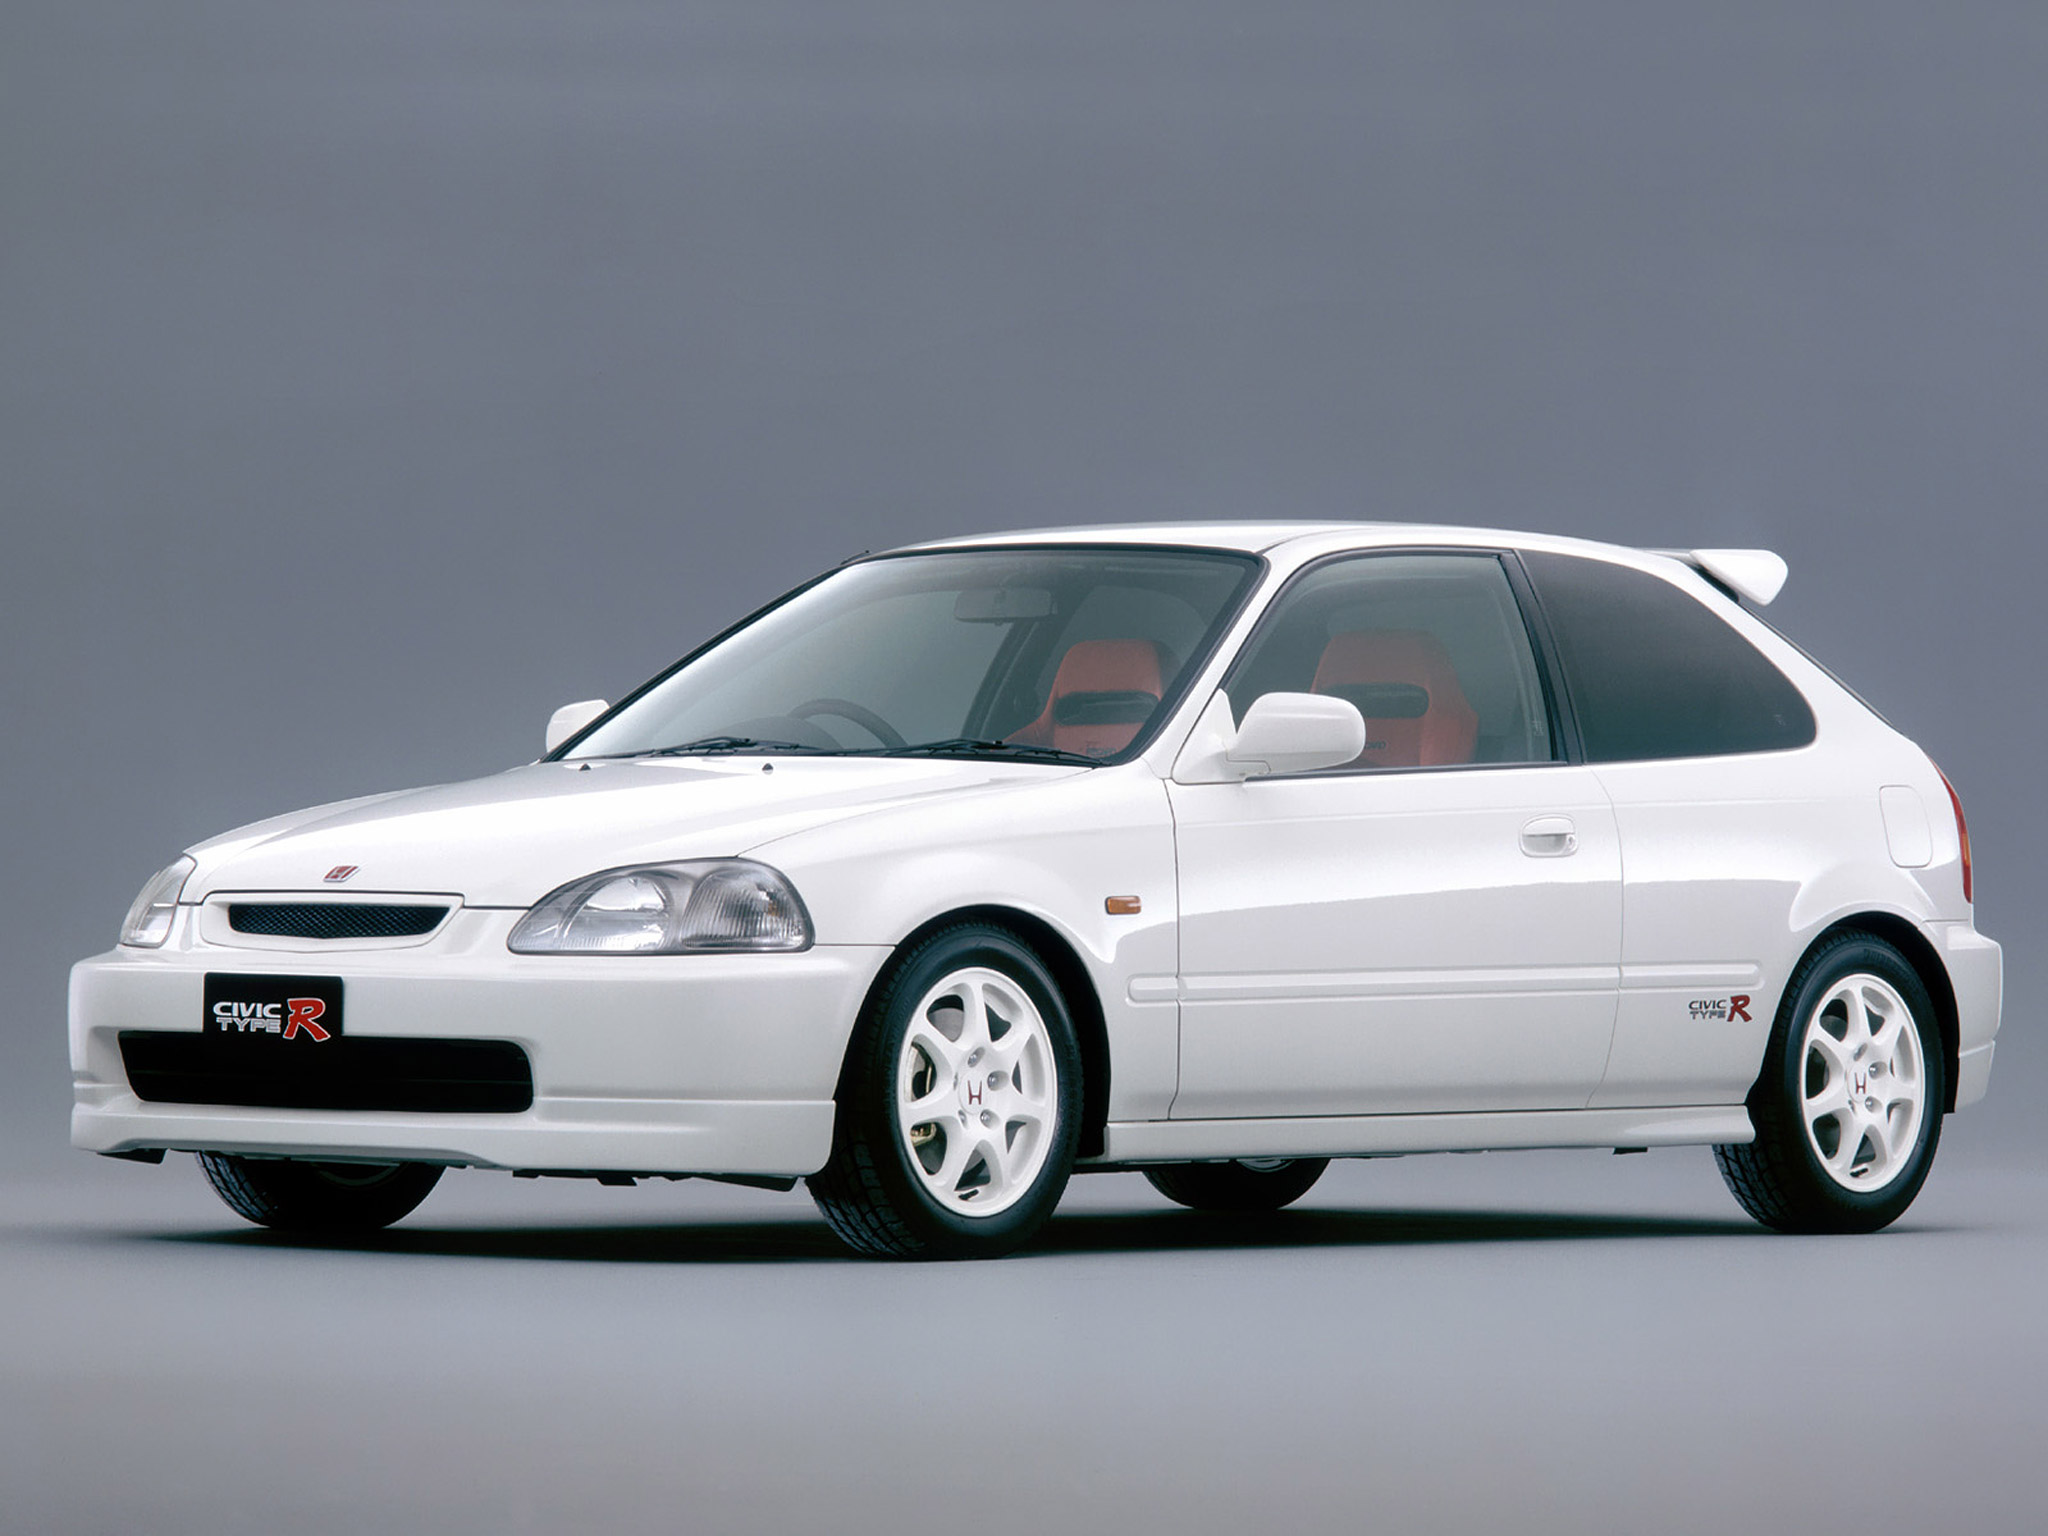  1997 Honda Civic Type R Wallpaper.